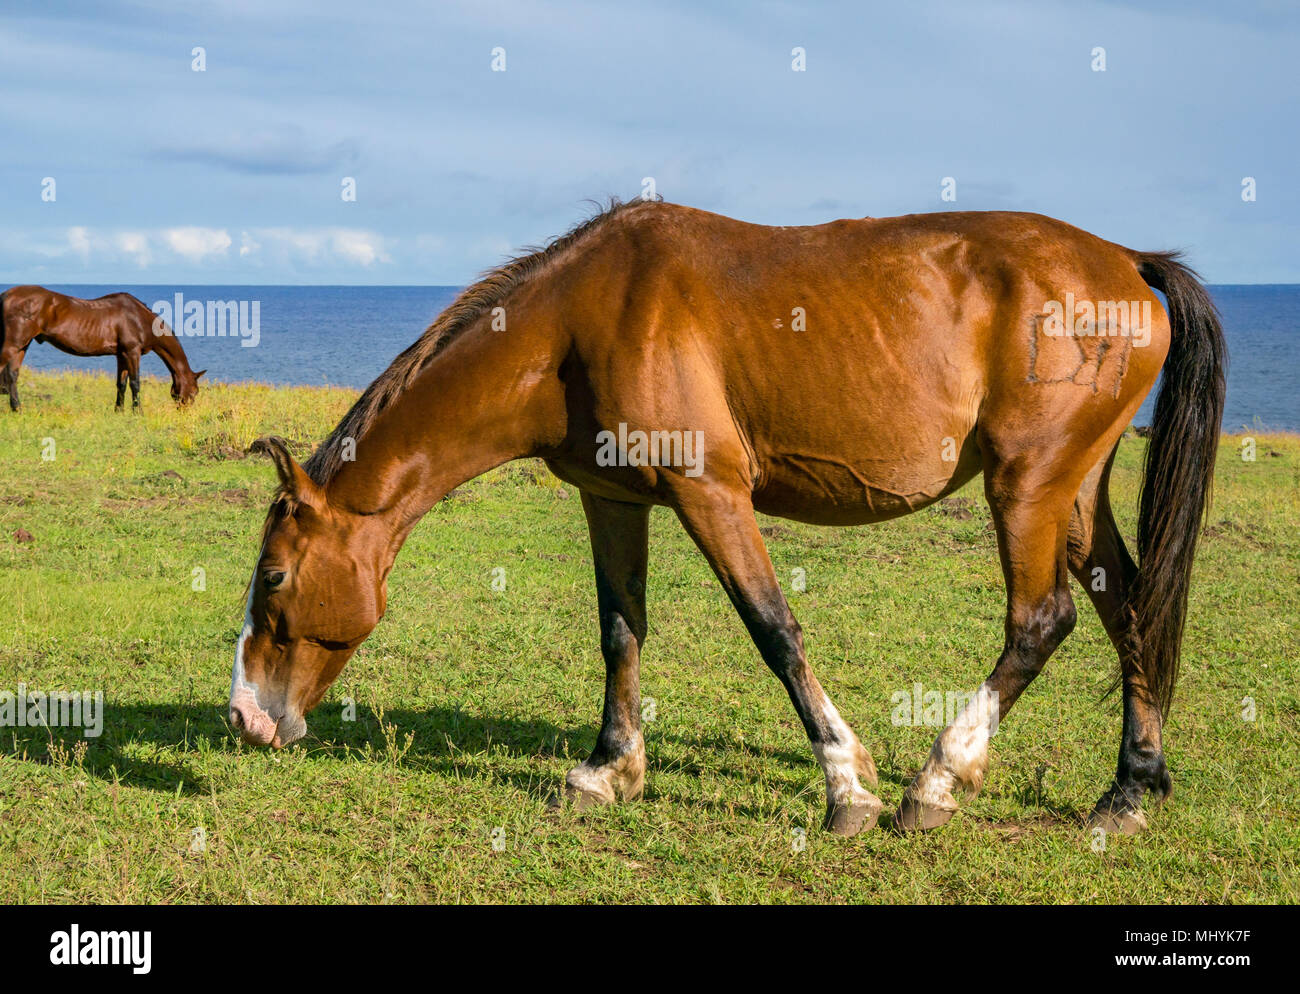 Cavalli che pascolano sull'erba accanto al mare, con cielo blu, Isola di Pasqua, Cile Foto Stock